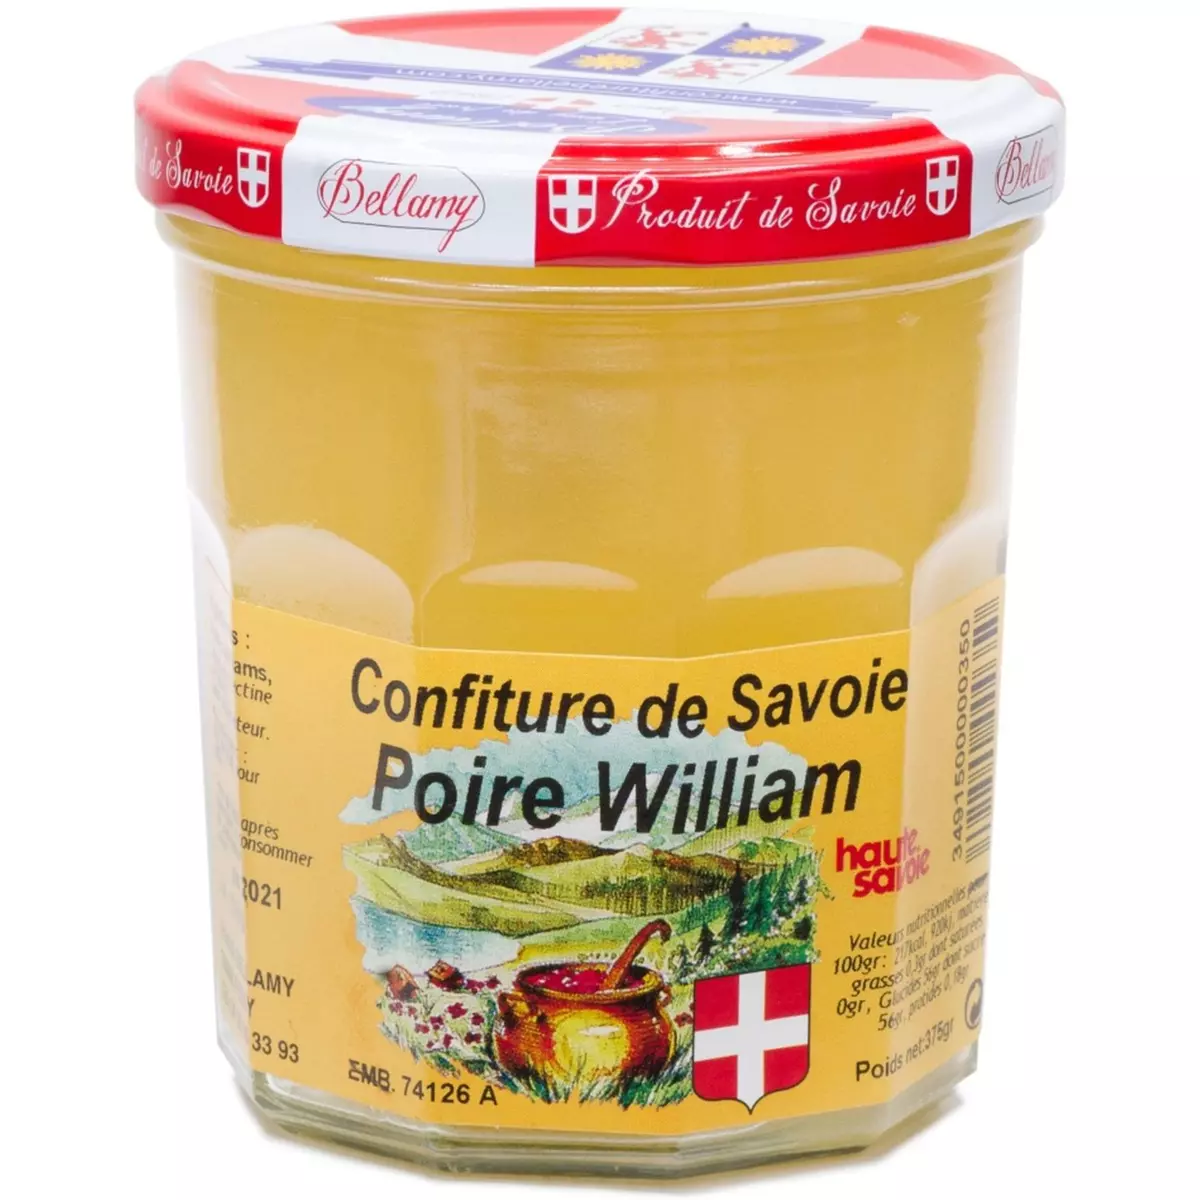 BELLAMY Confiture de Savoie de poire William 375g